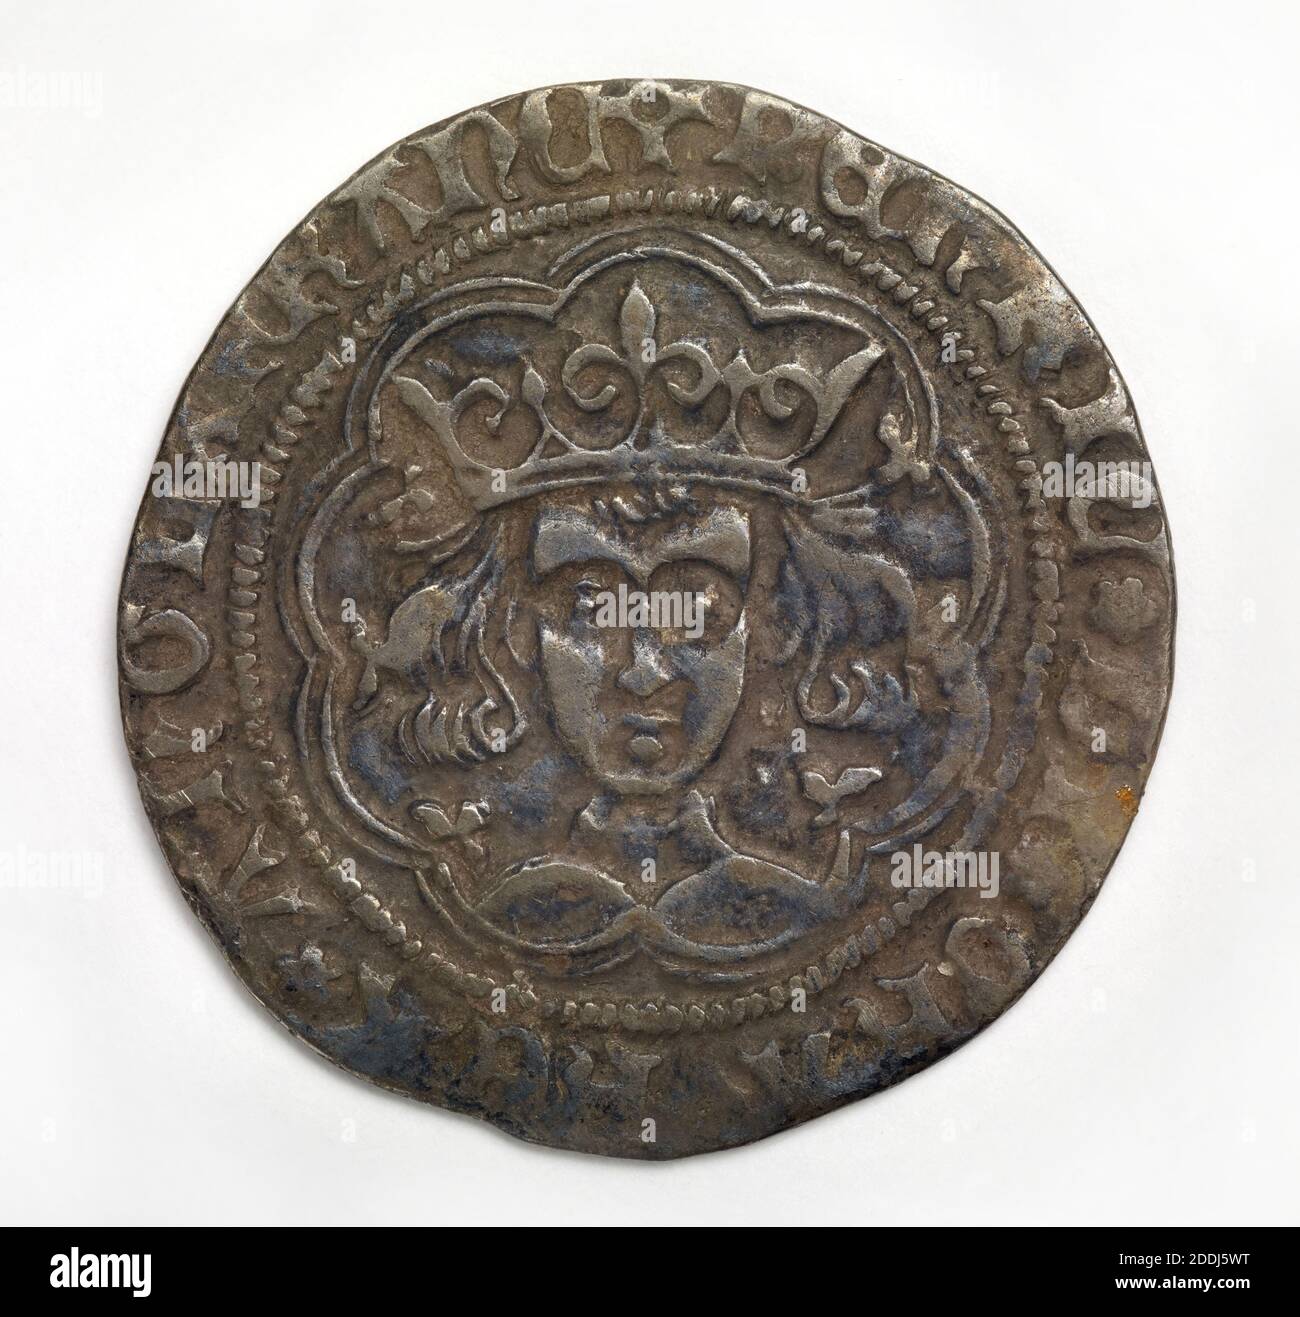 Mittelalterliche Groat von Henry VI, Münze Calais, 1422-1461, Antike und mittelalterliche  Münzen, Mittelalter, Münze, Metall Stockfotografie - Alamy